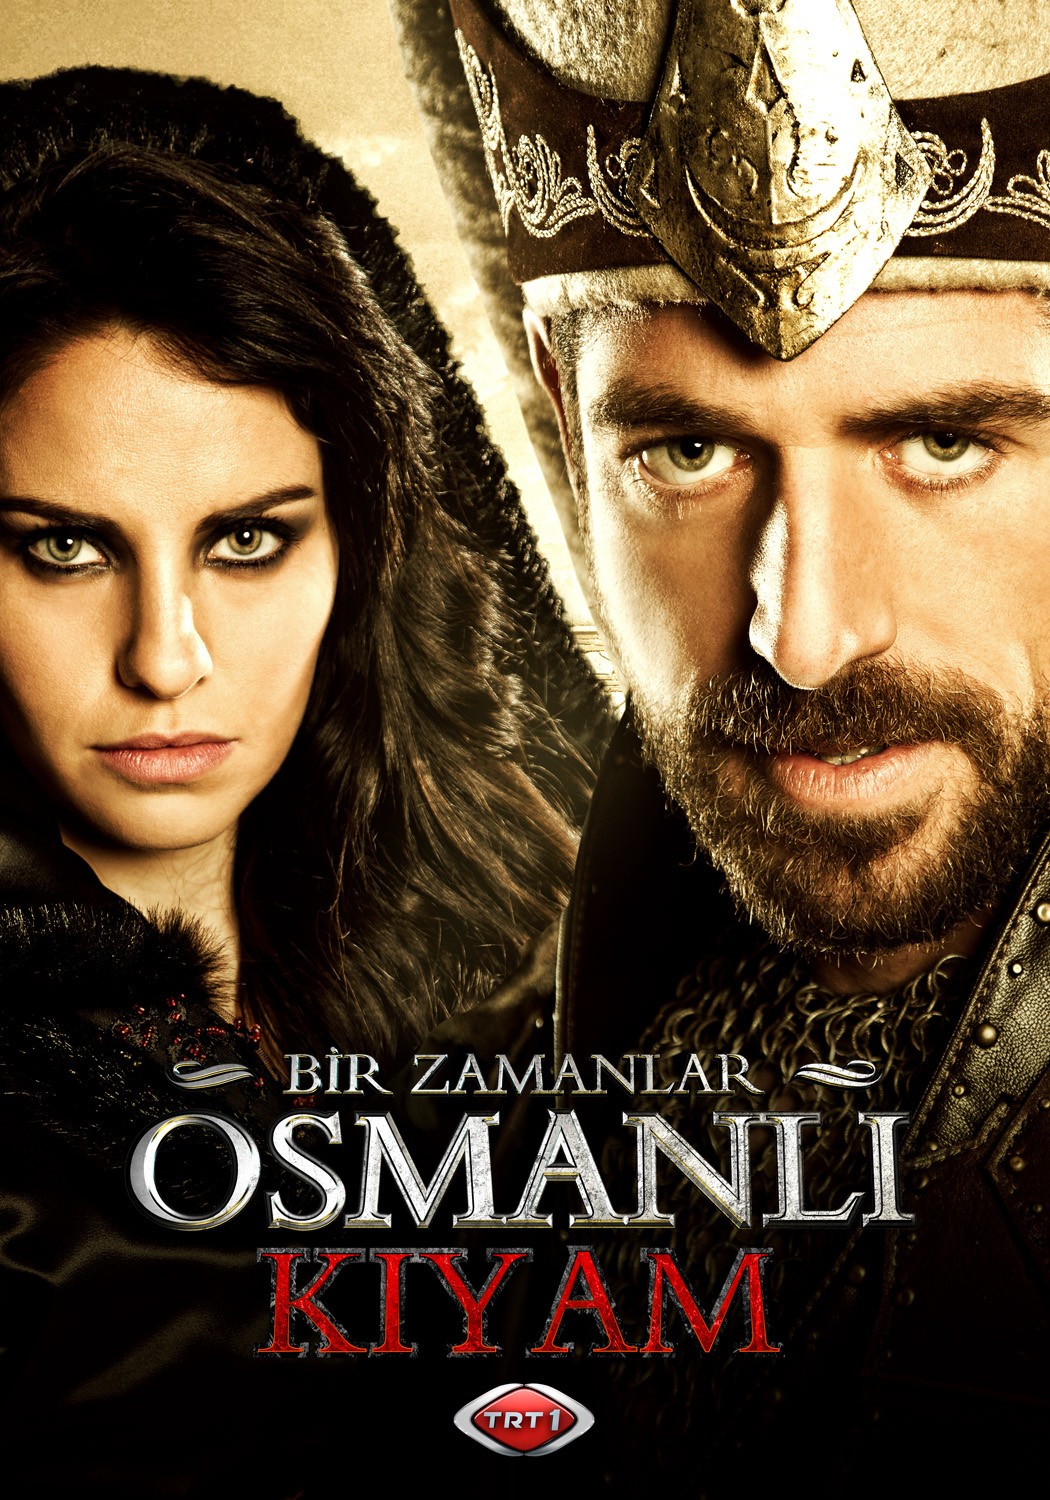 Extra Large TV Poster Image for Bir Zamanlar Osmanli Kiyam (#8 of 26)